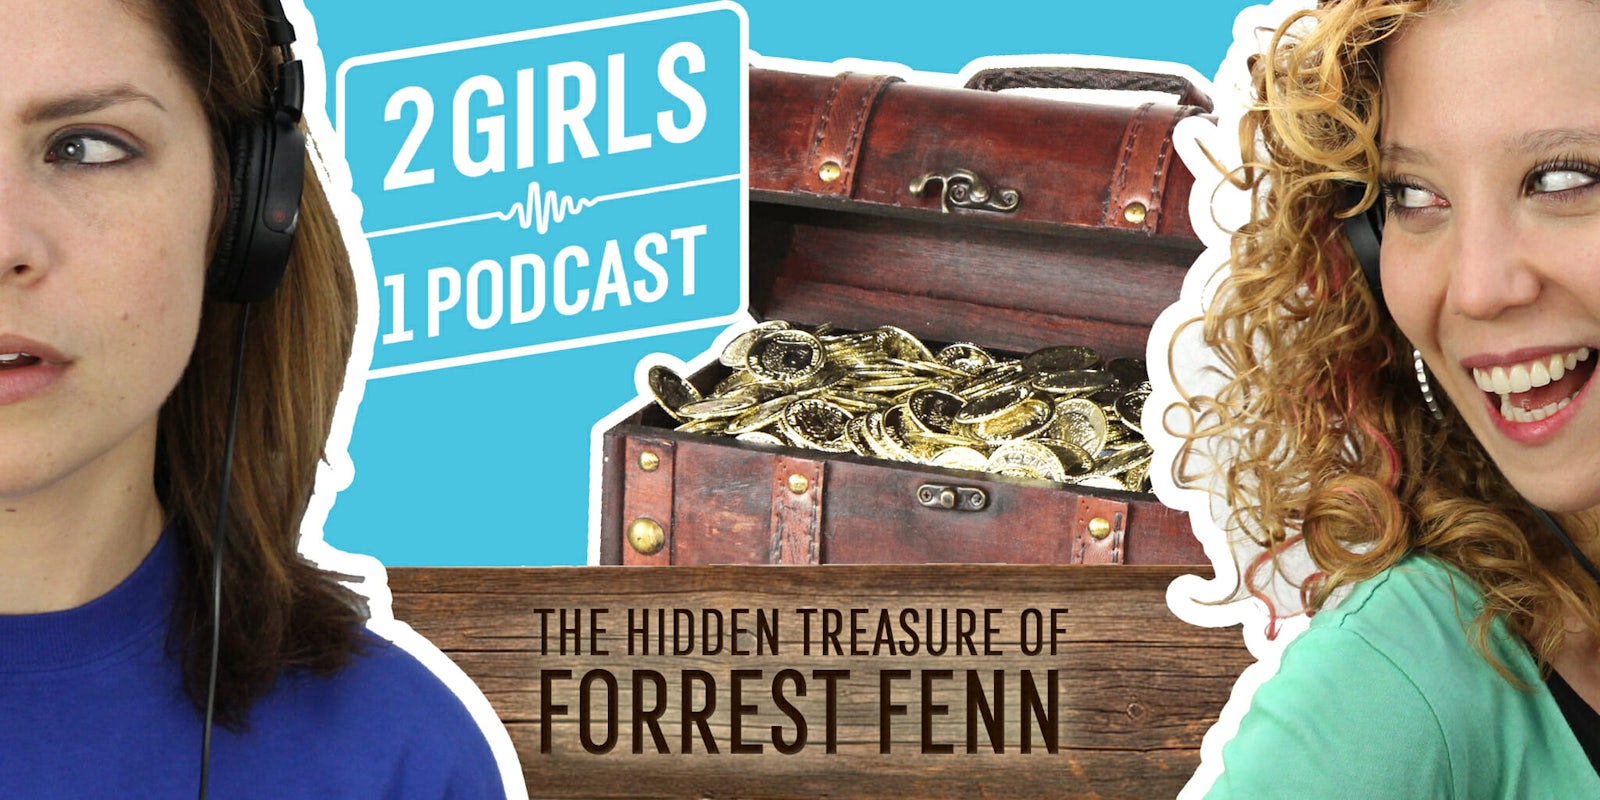 2 Girls 1 Podcast FORREST FENN